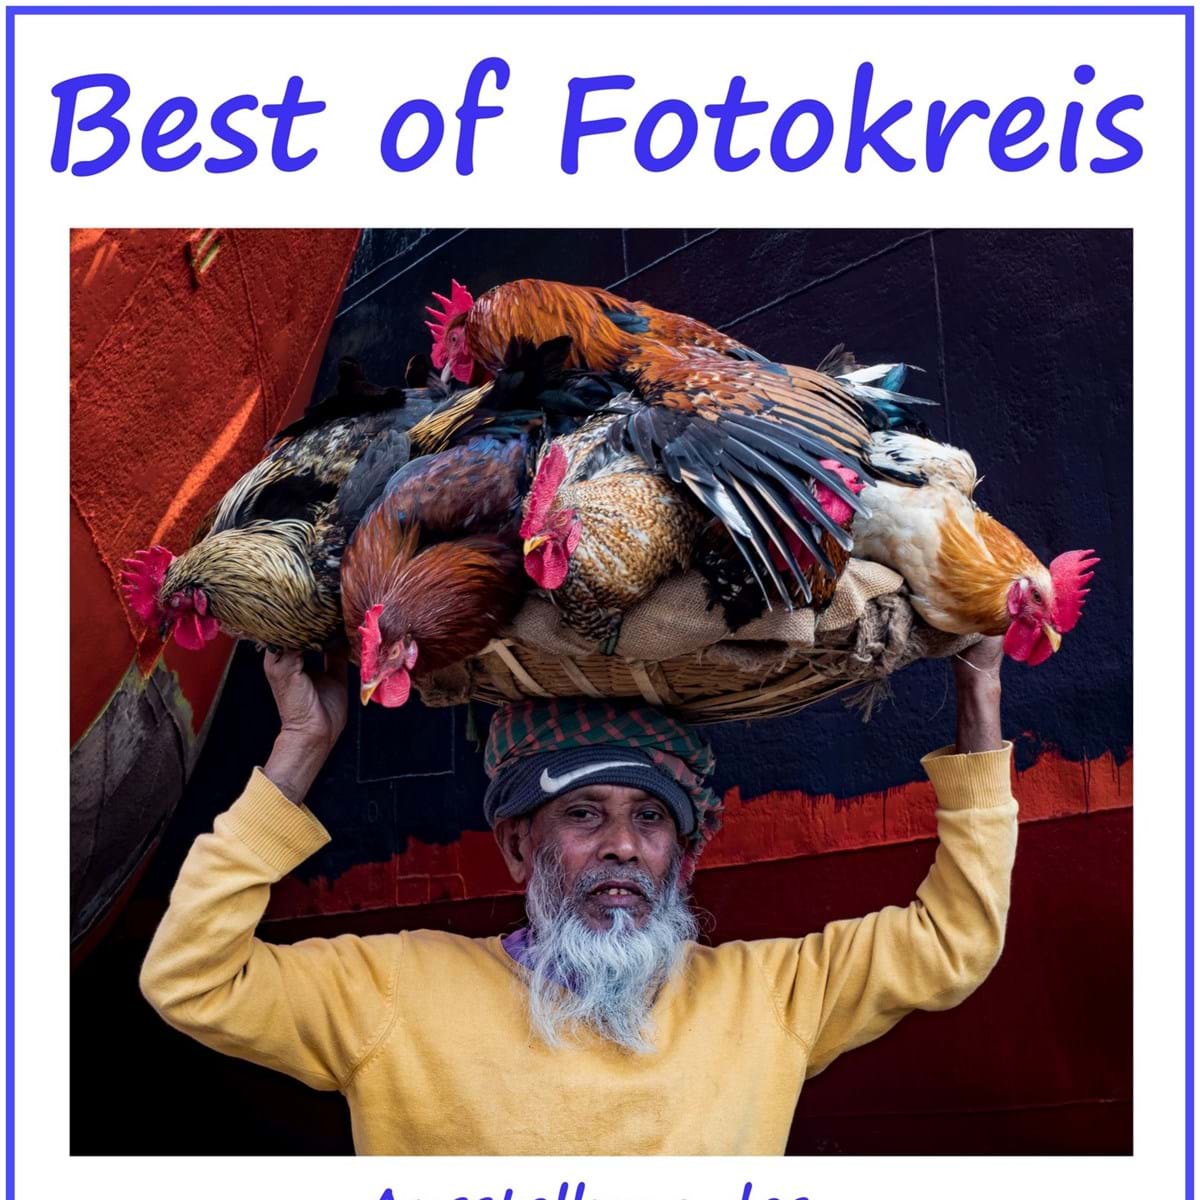 Best of Fotokreis